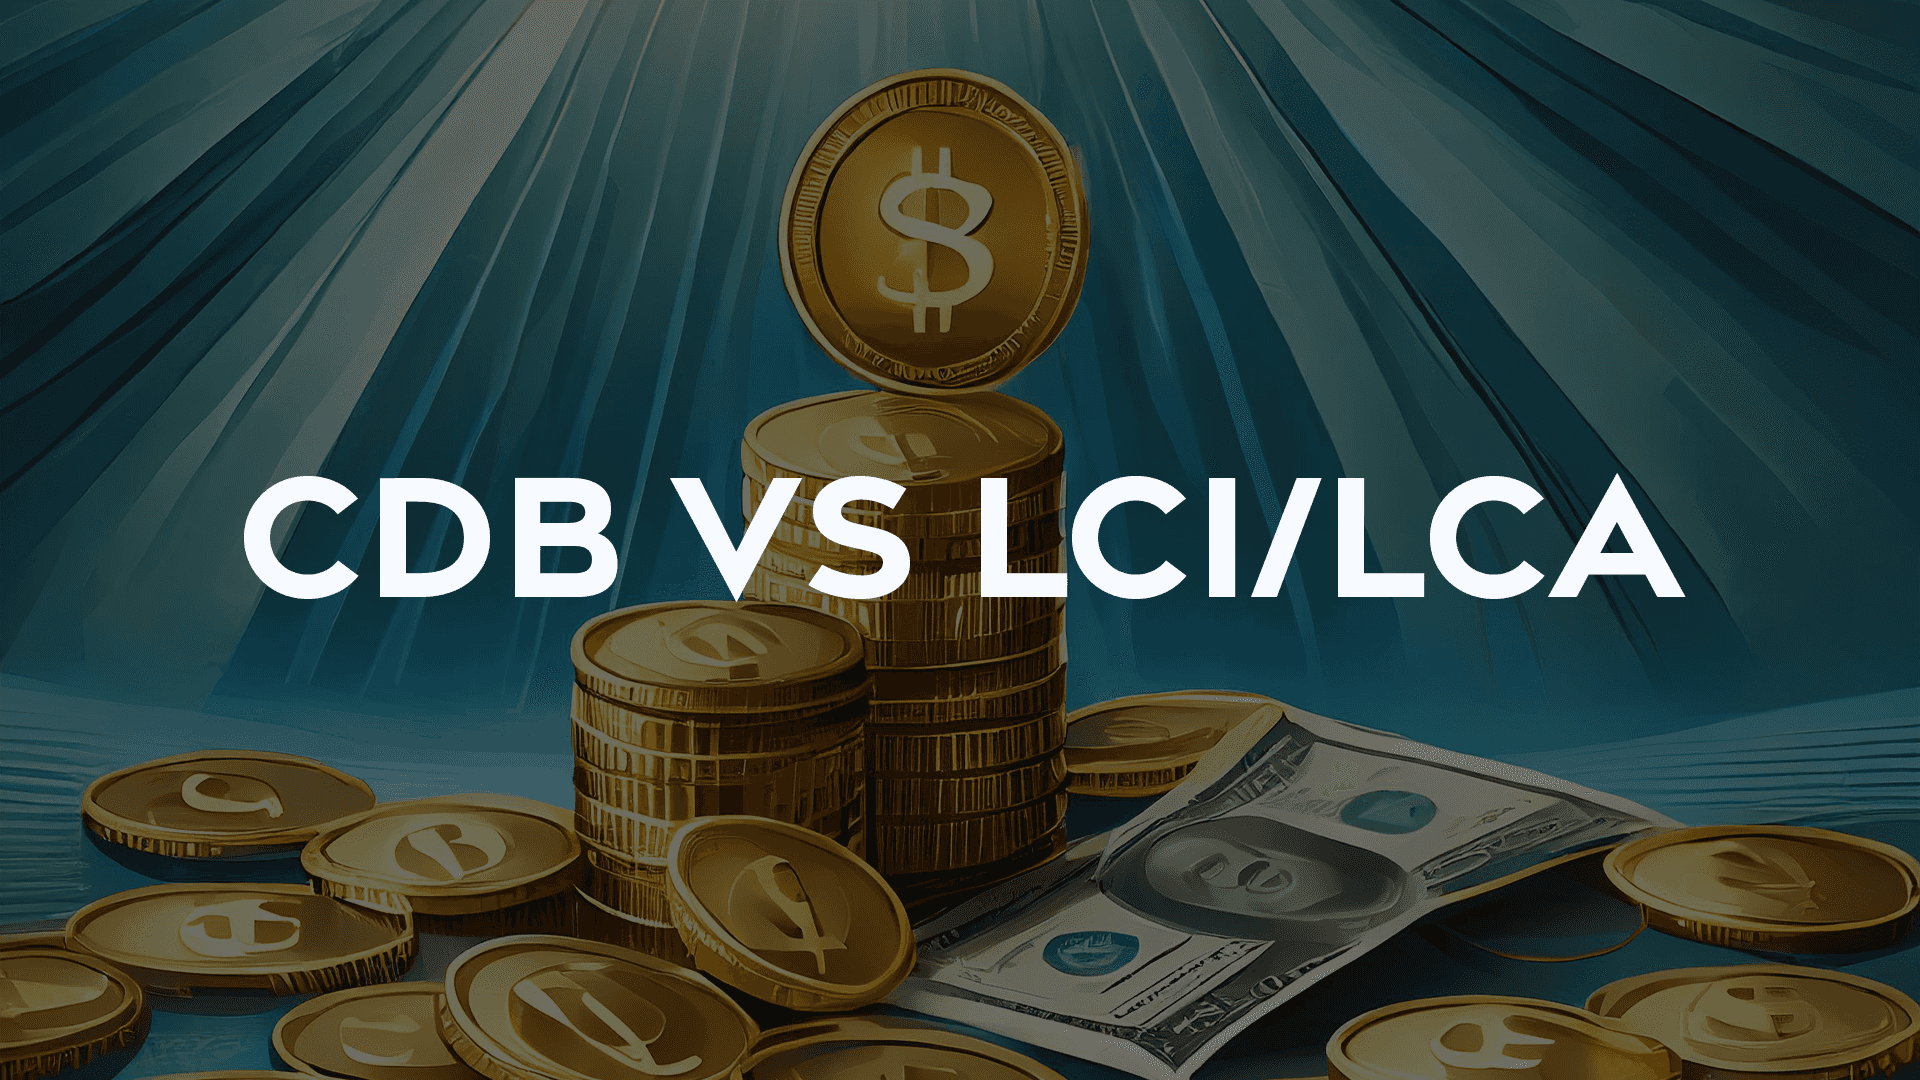 Calculadora CDB vs LCI/LCA